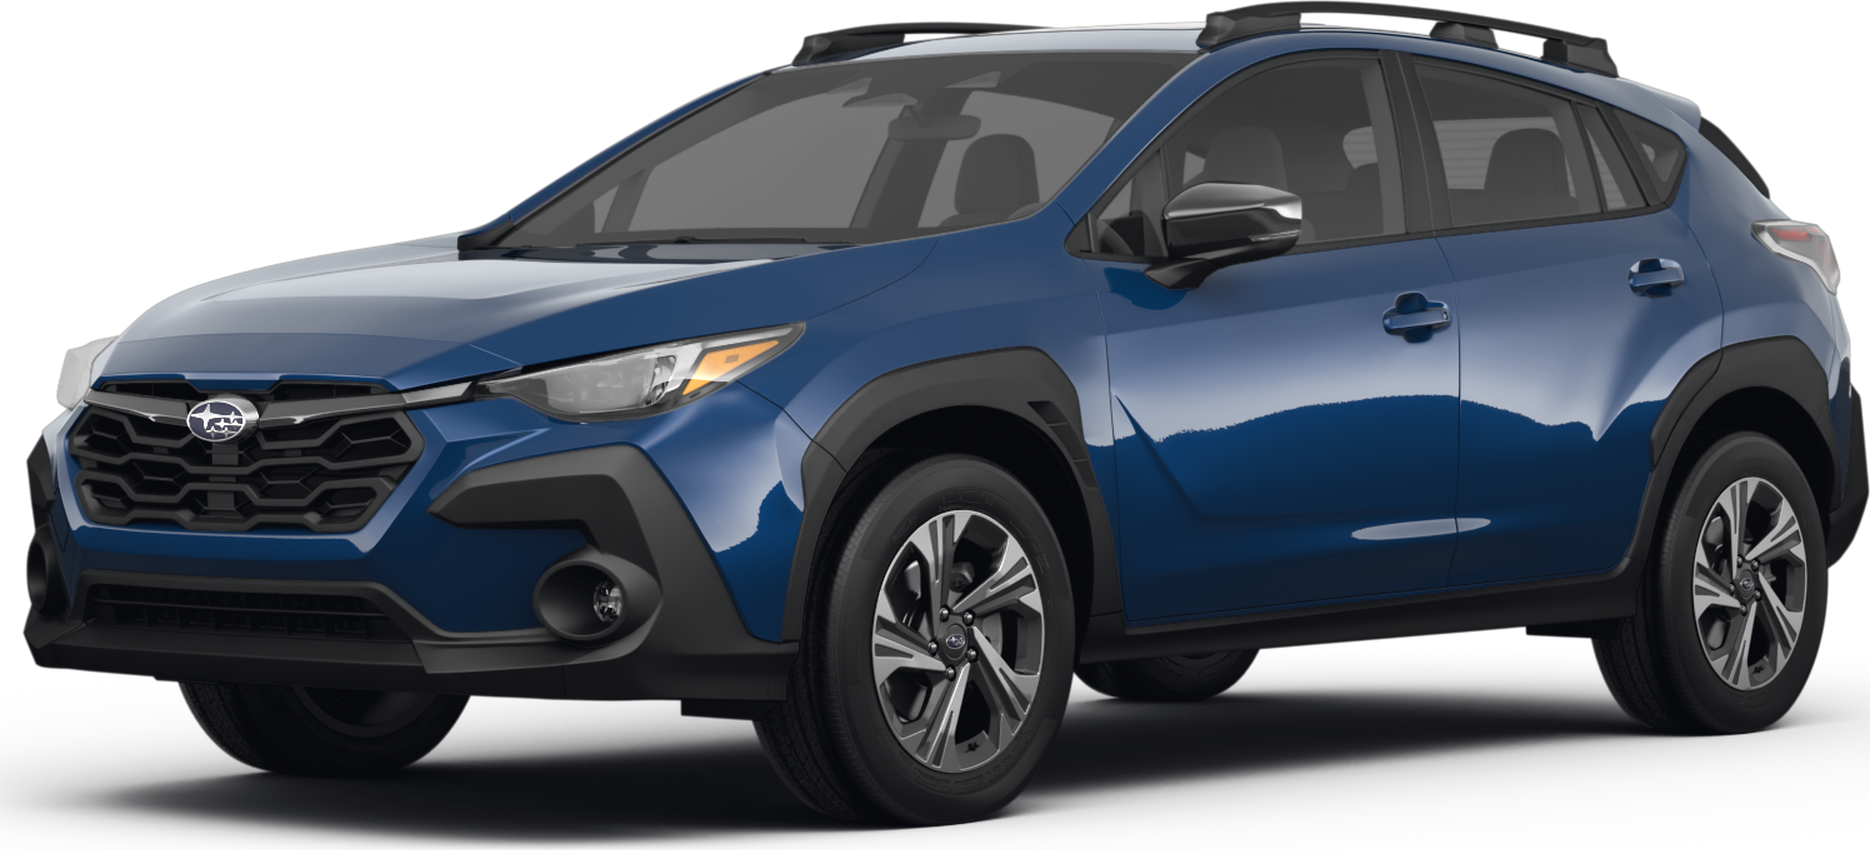 Subaru XV Crosstrek - Consumer Reports